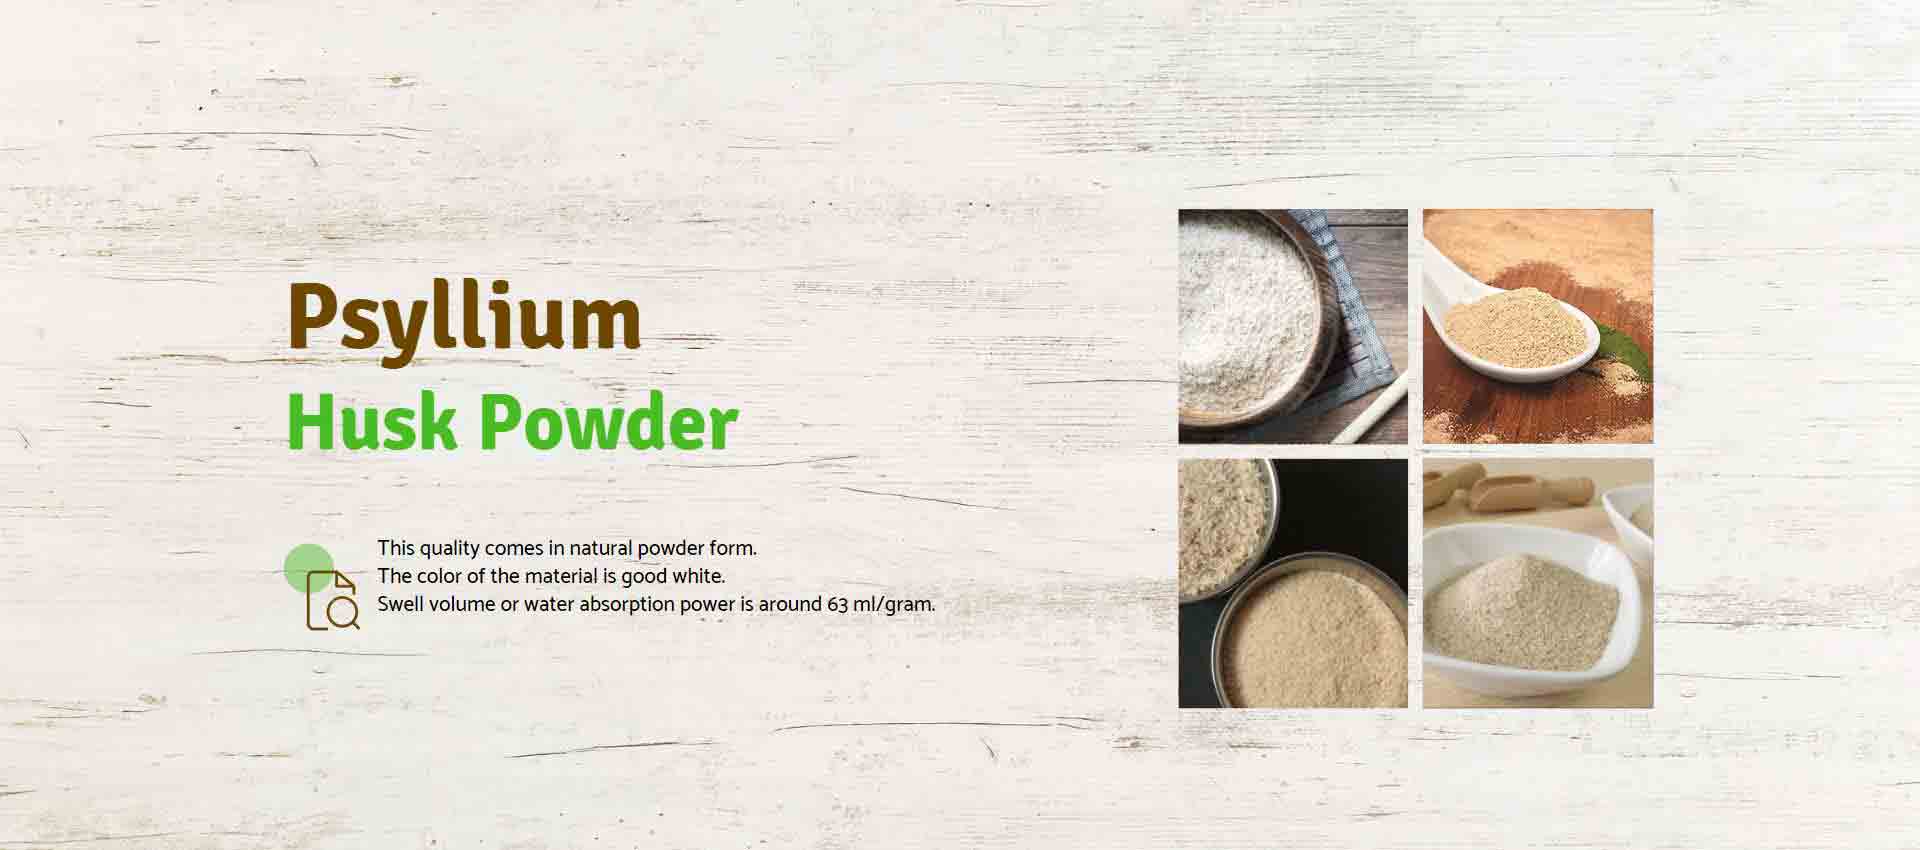 Psyllium Husk Powder Manufacturers in China